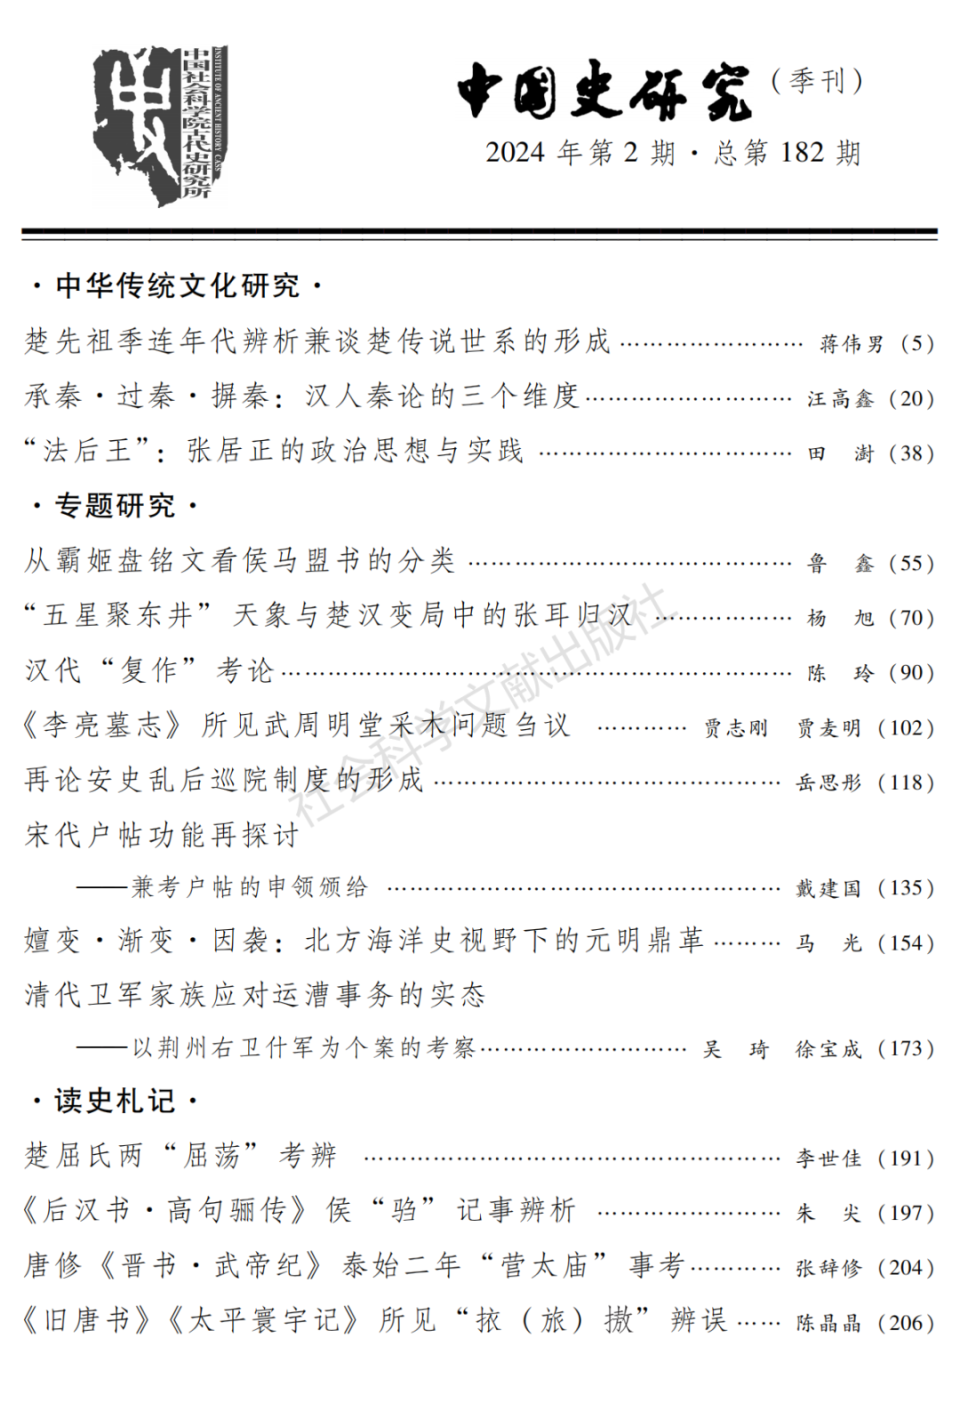 《中国史研究》2024年第2期目录及内容提要